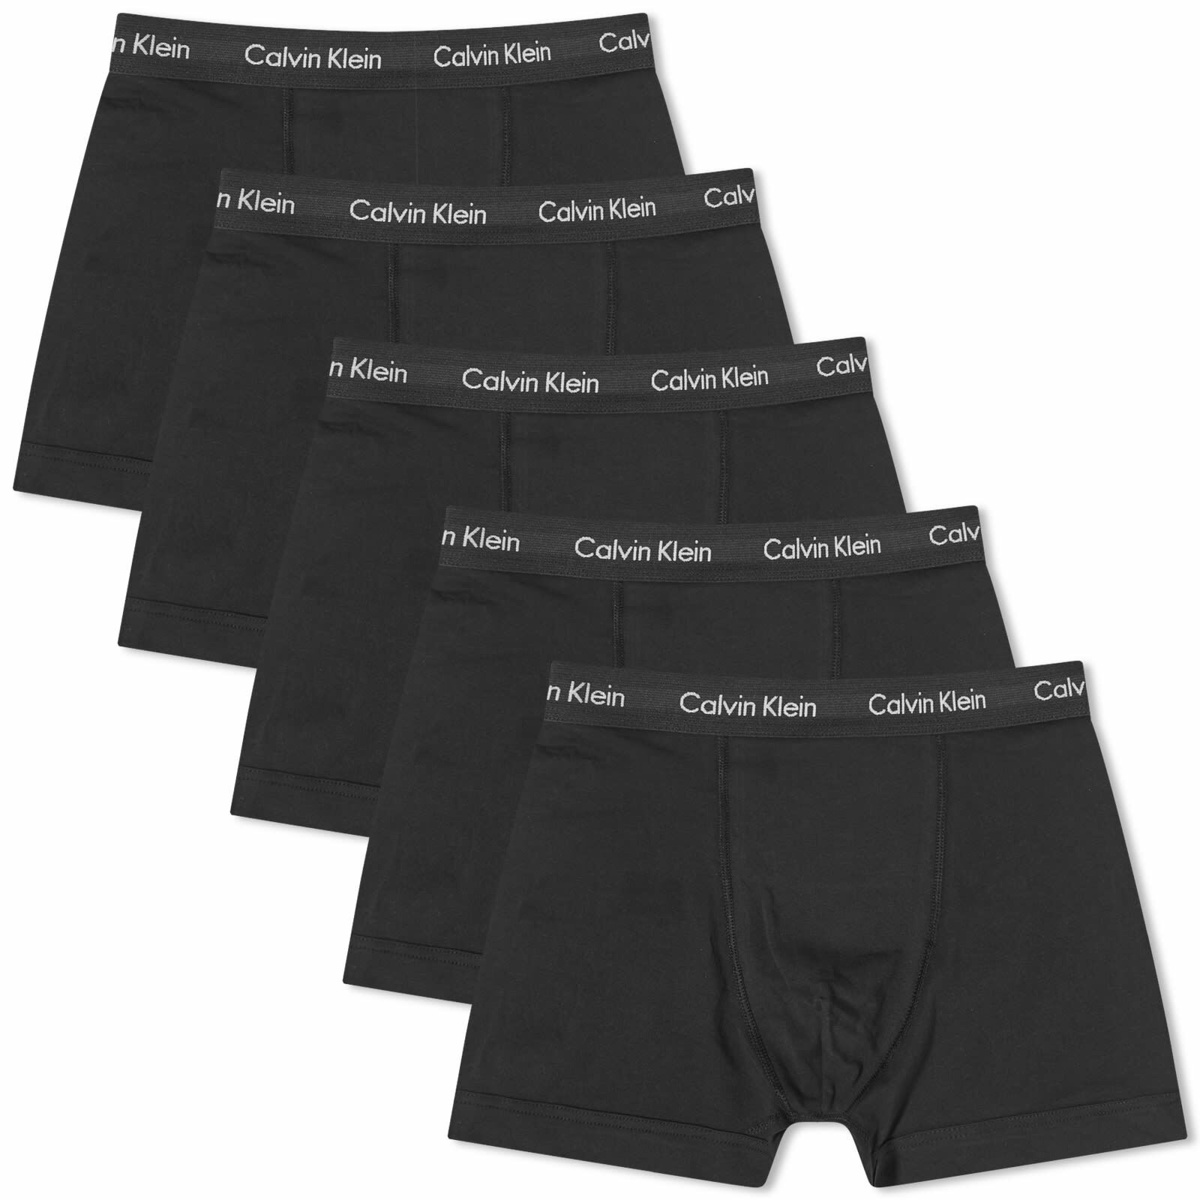 Calvin Klein Men's Trunk - 5 Pack in Black Calvin Klein